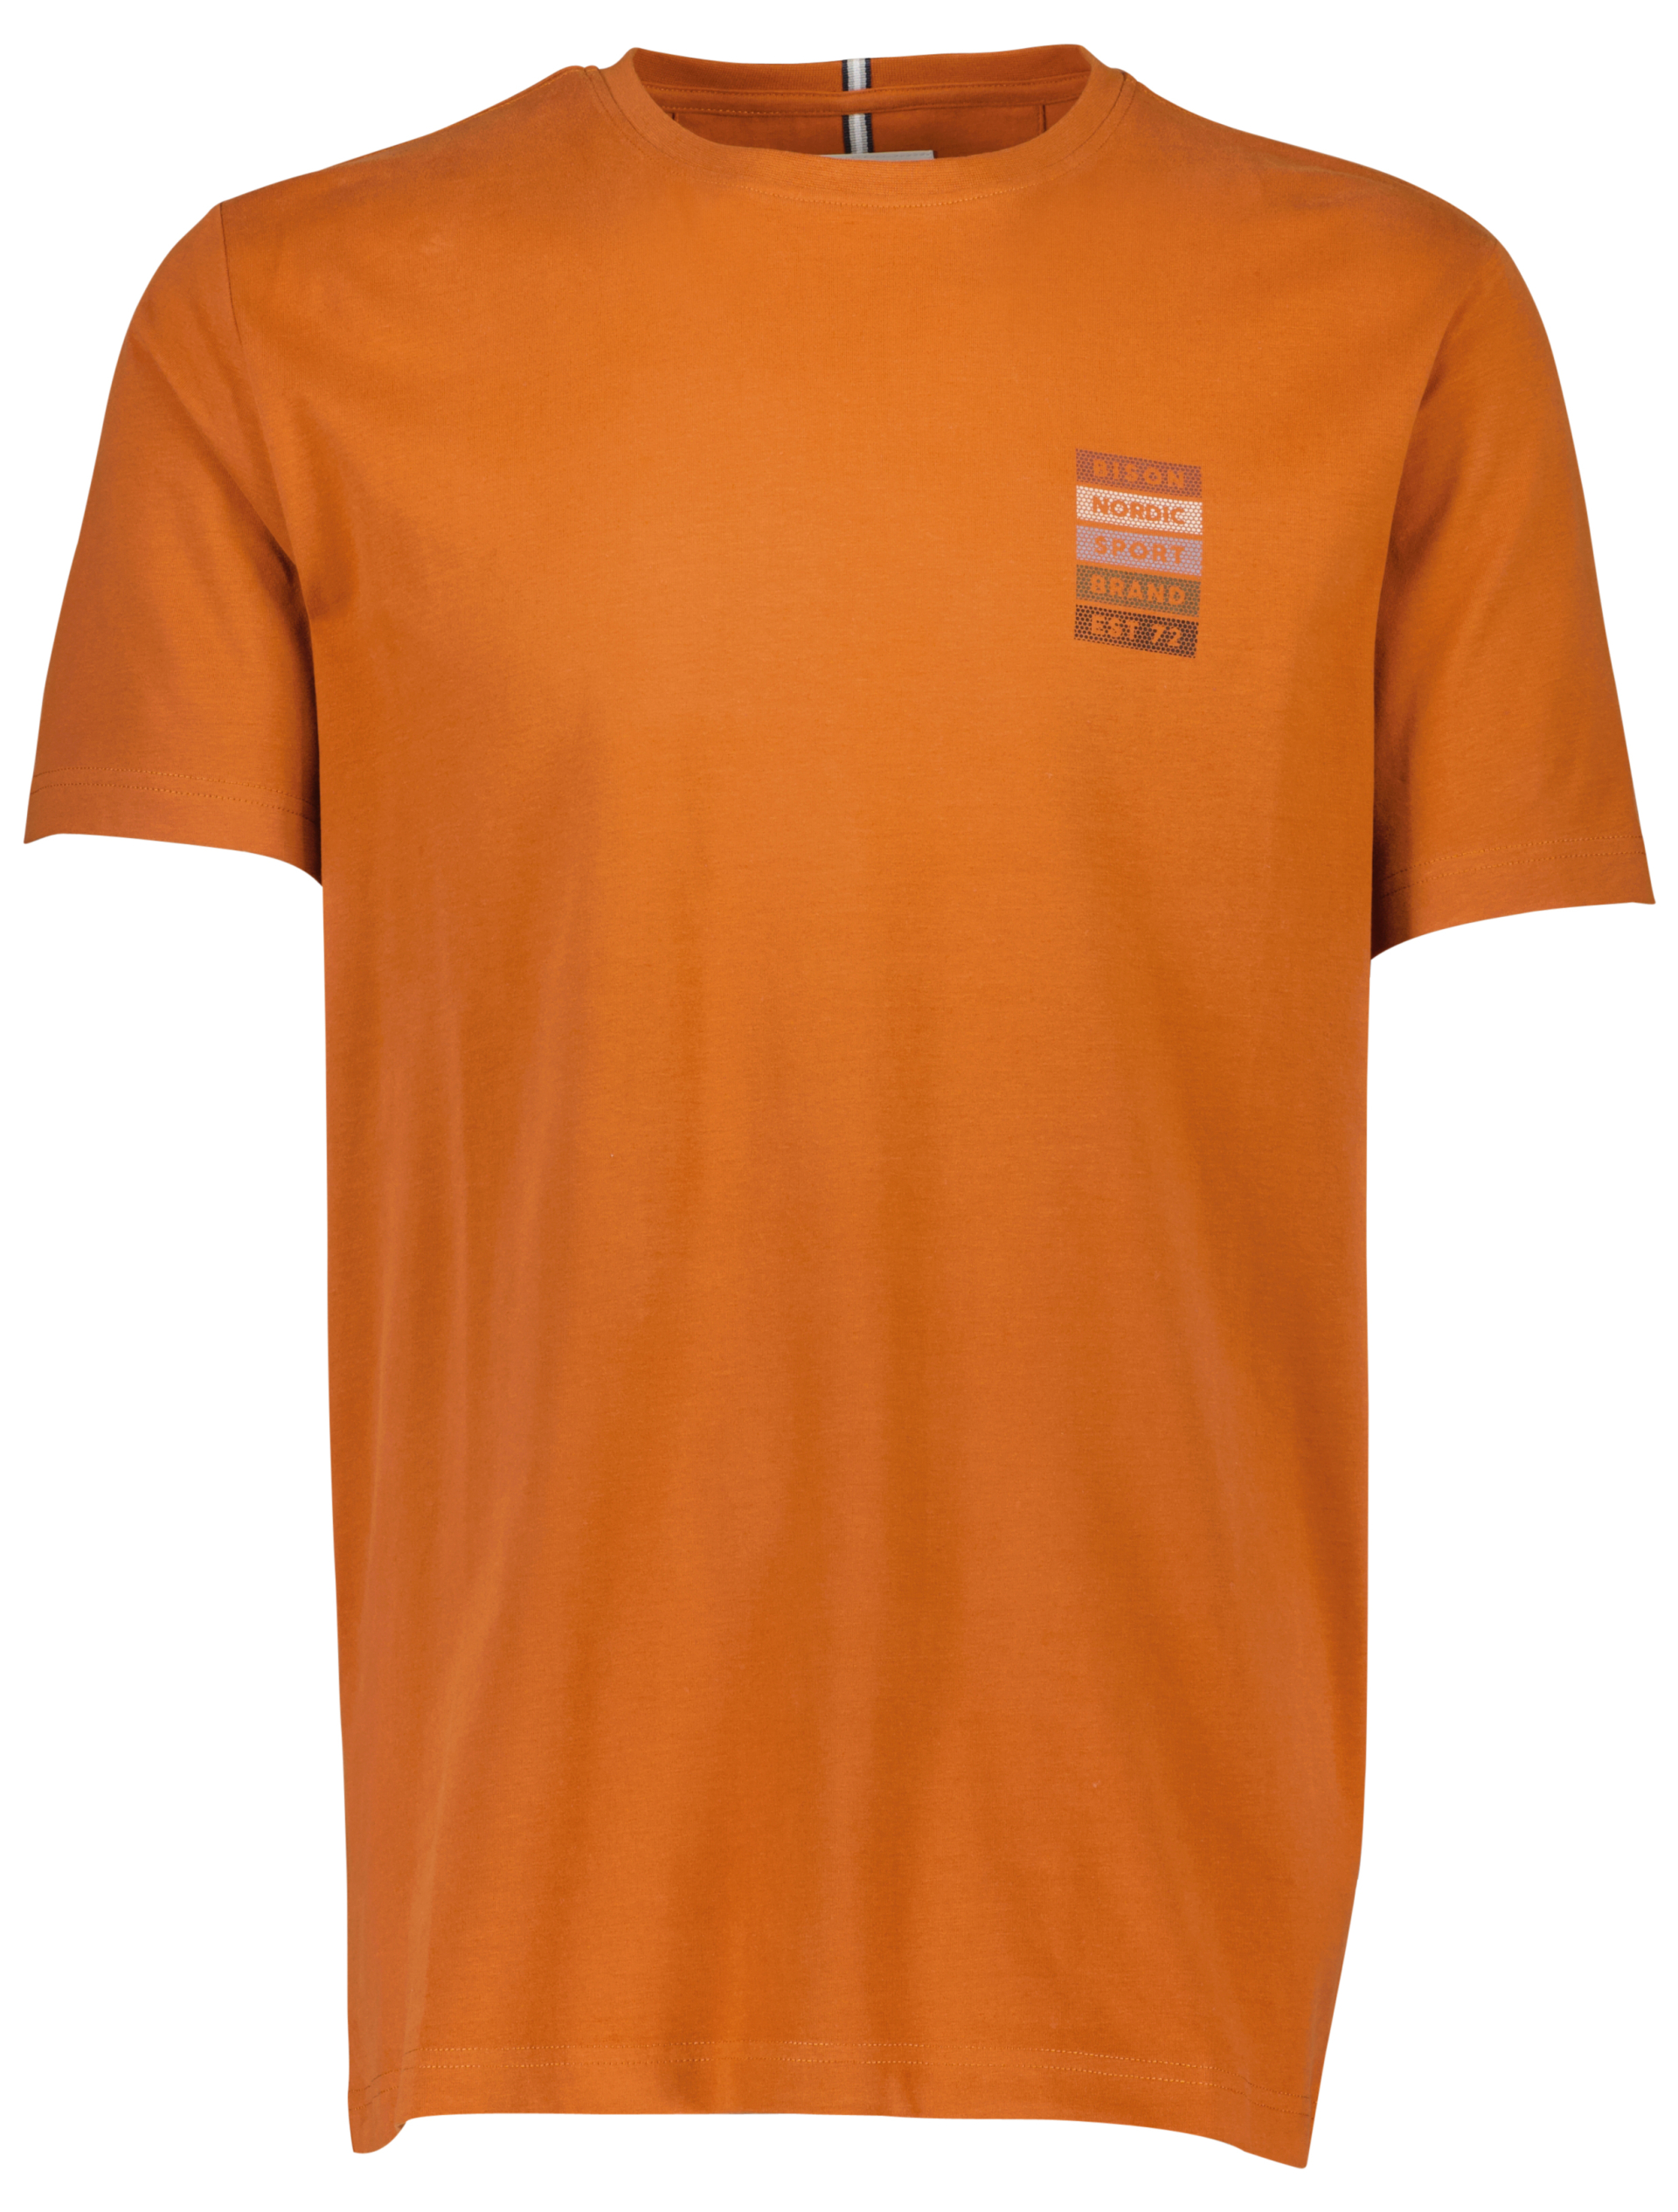 Bison T-shirt orange / ginger